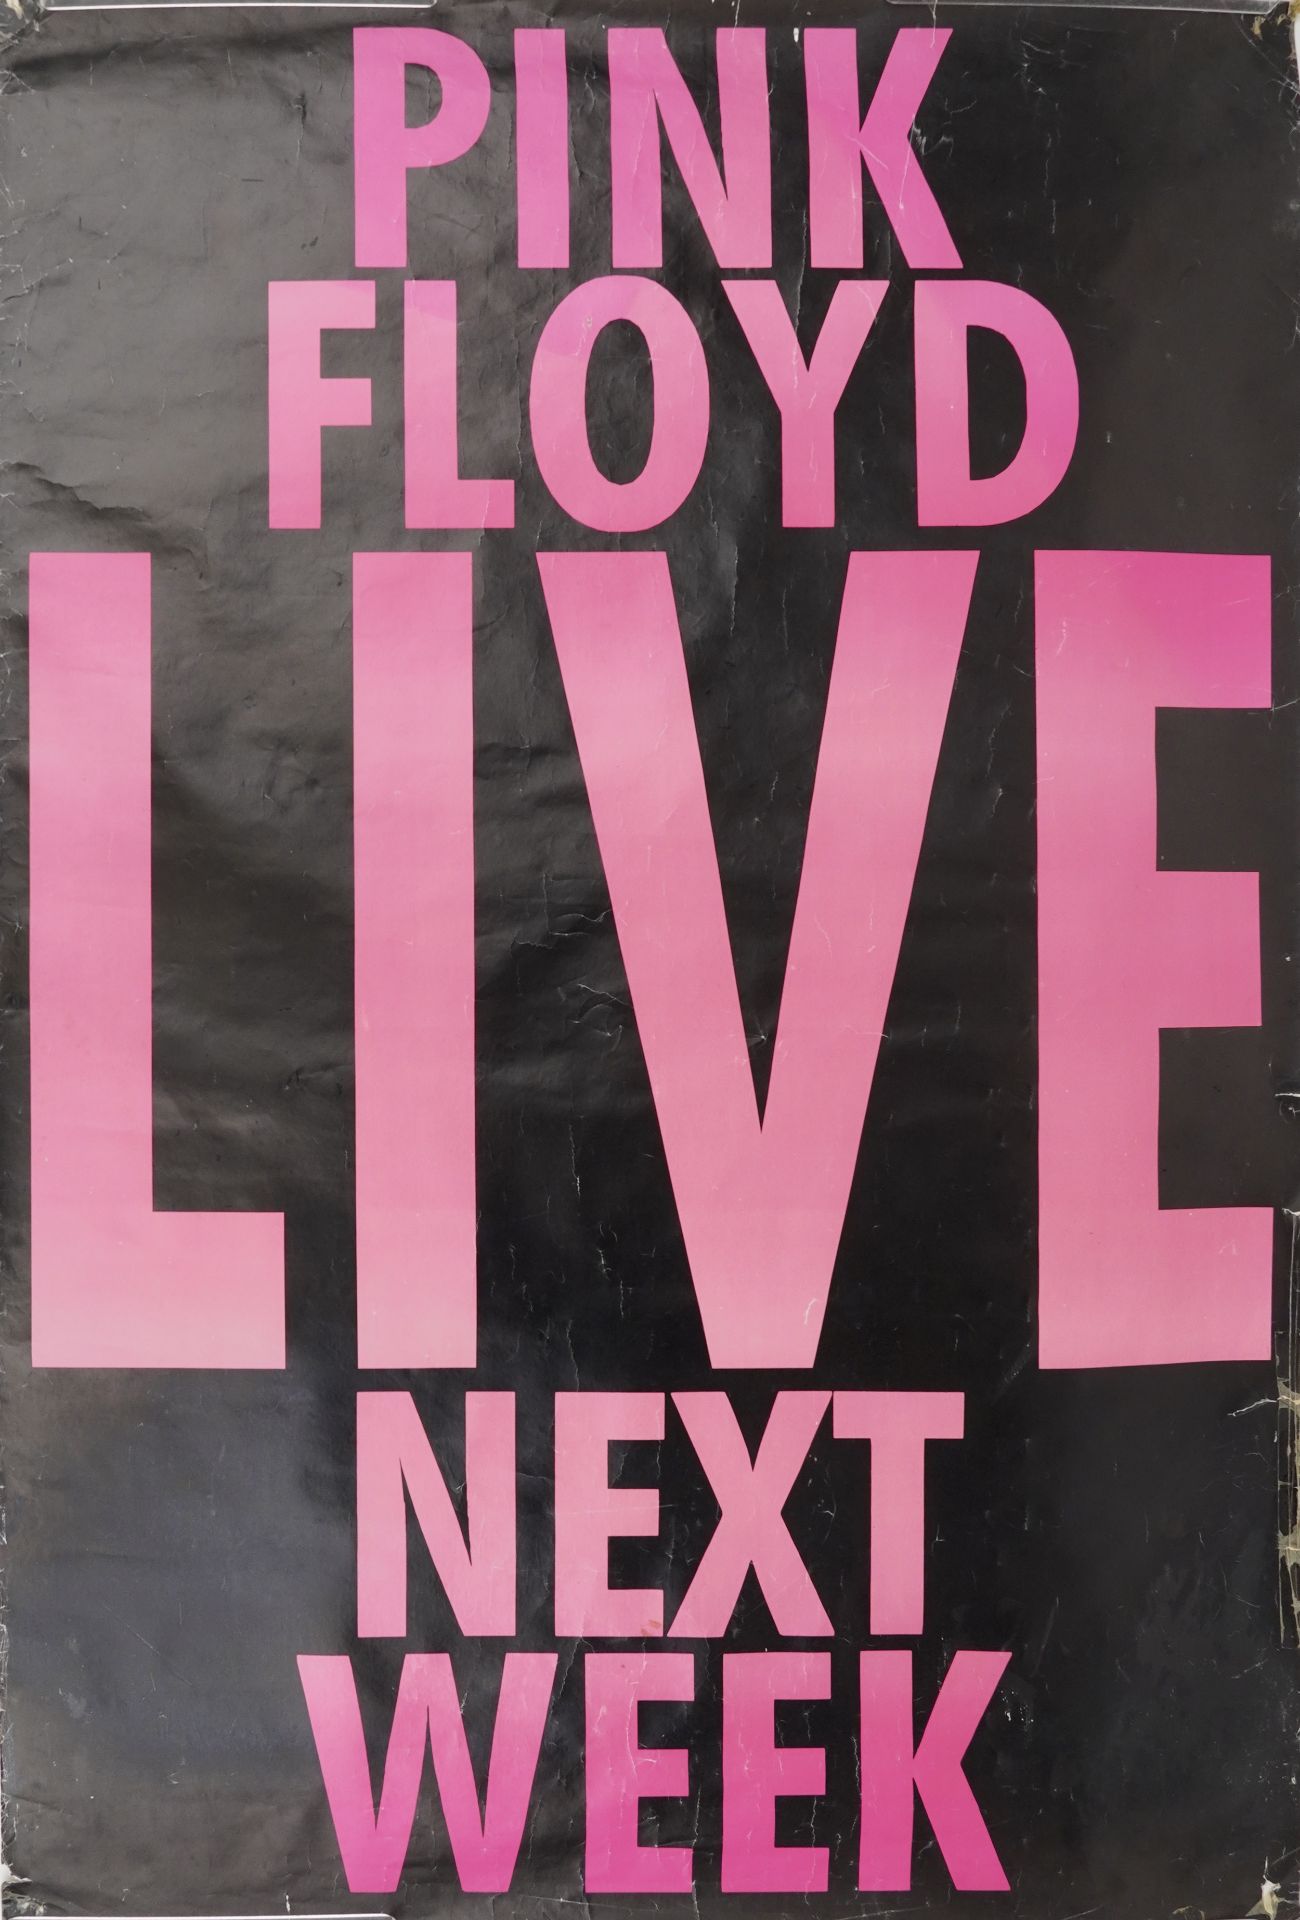 Vintage Pink Floyd Live Next Week advertising billboard poster, 152cm x 100.5cm